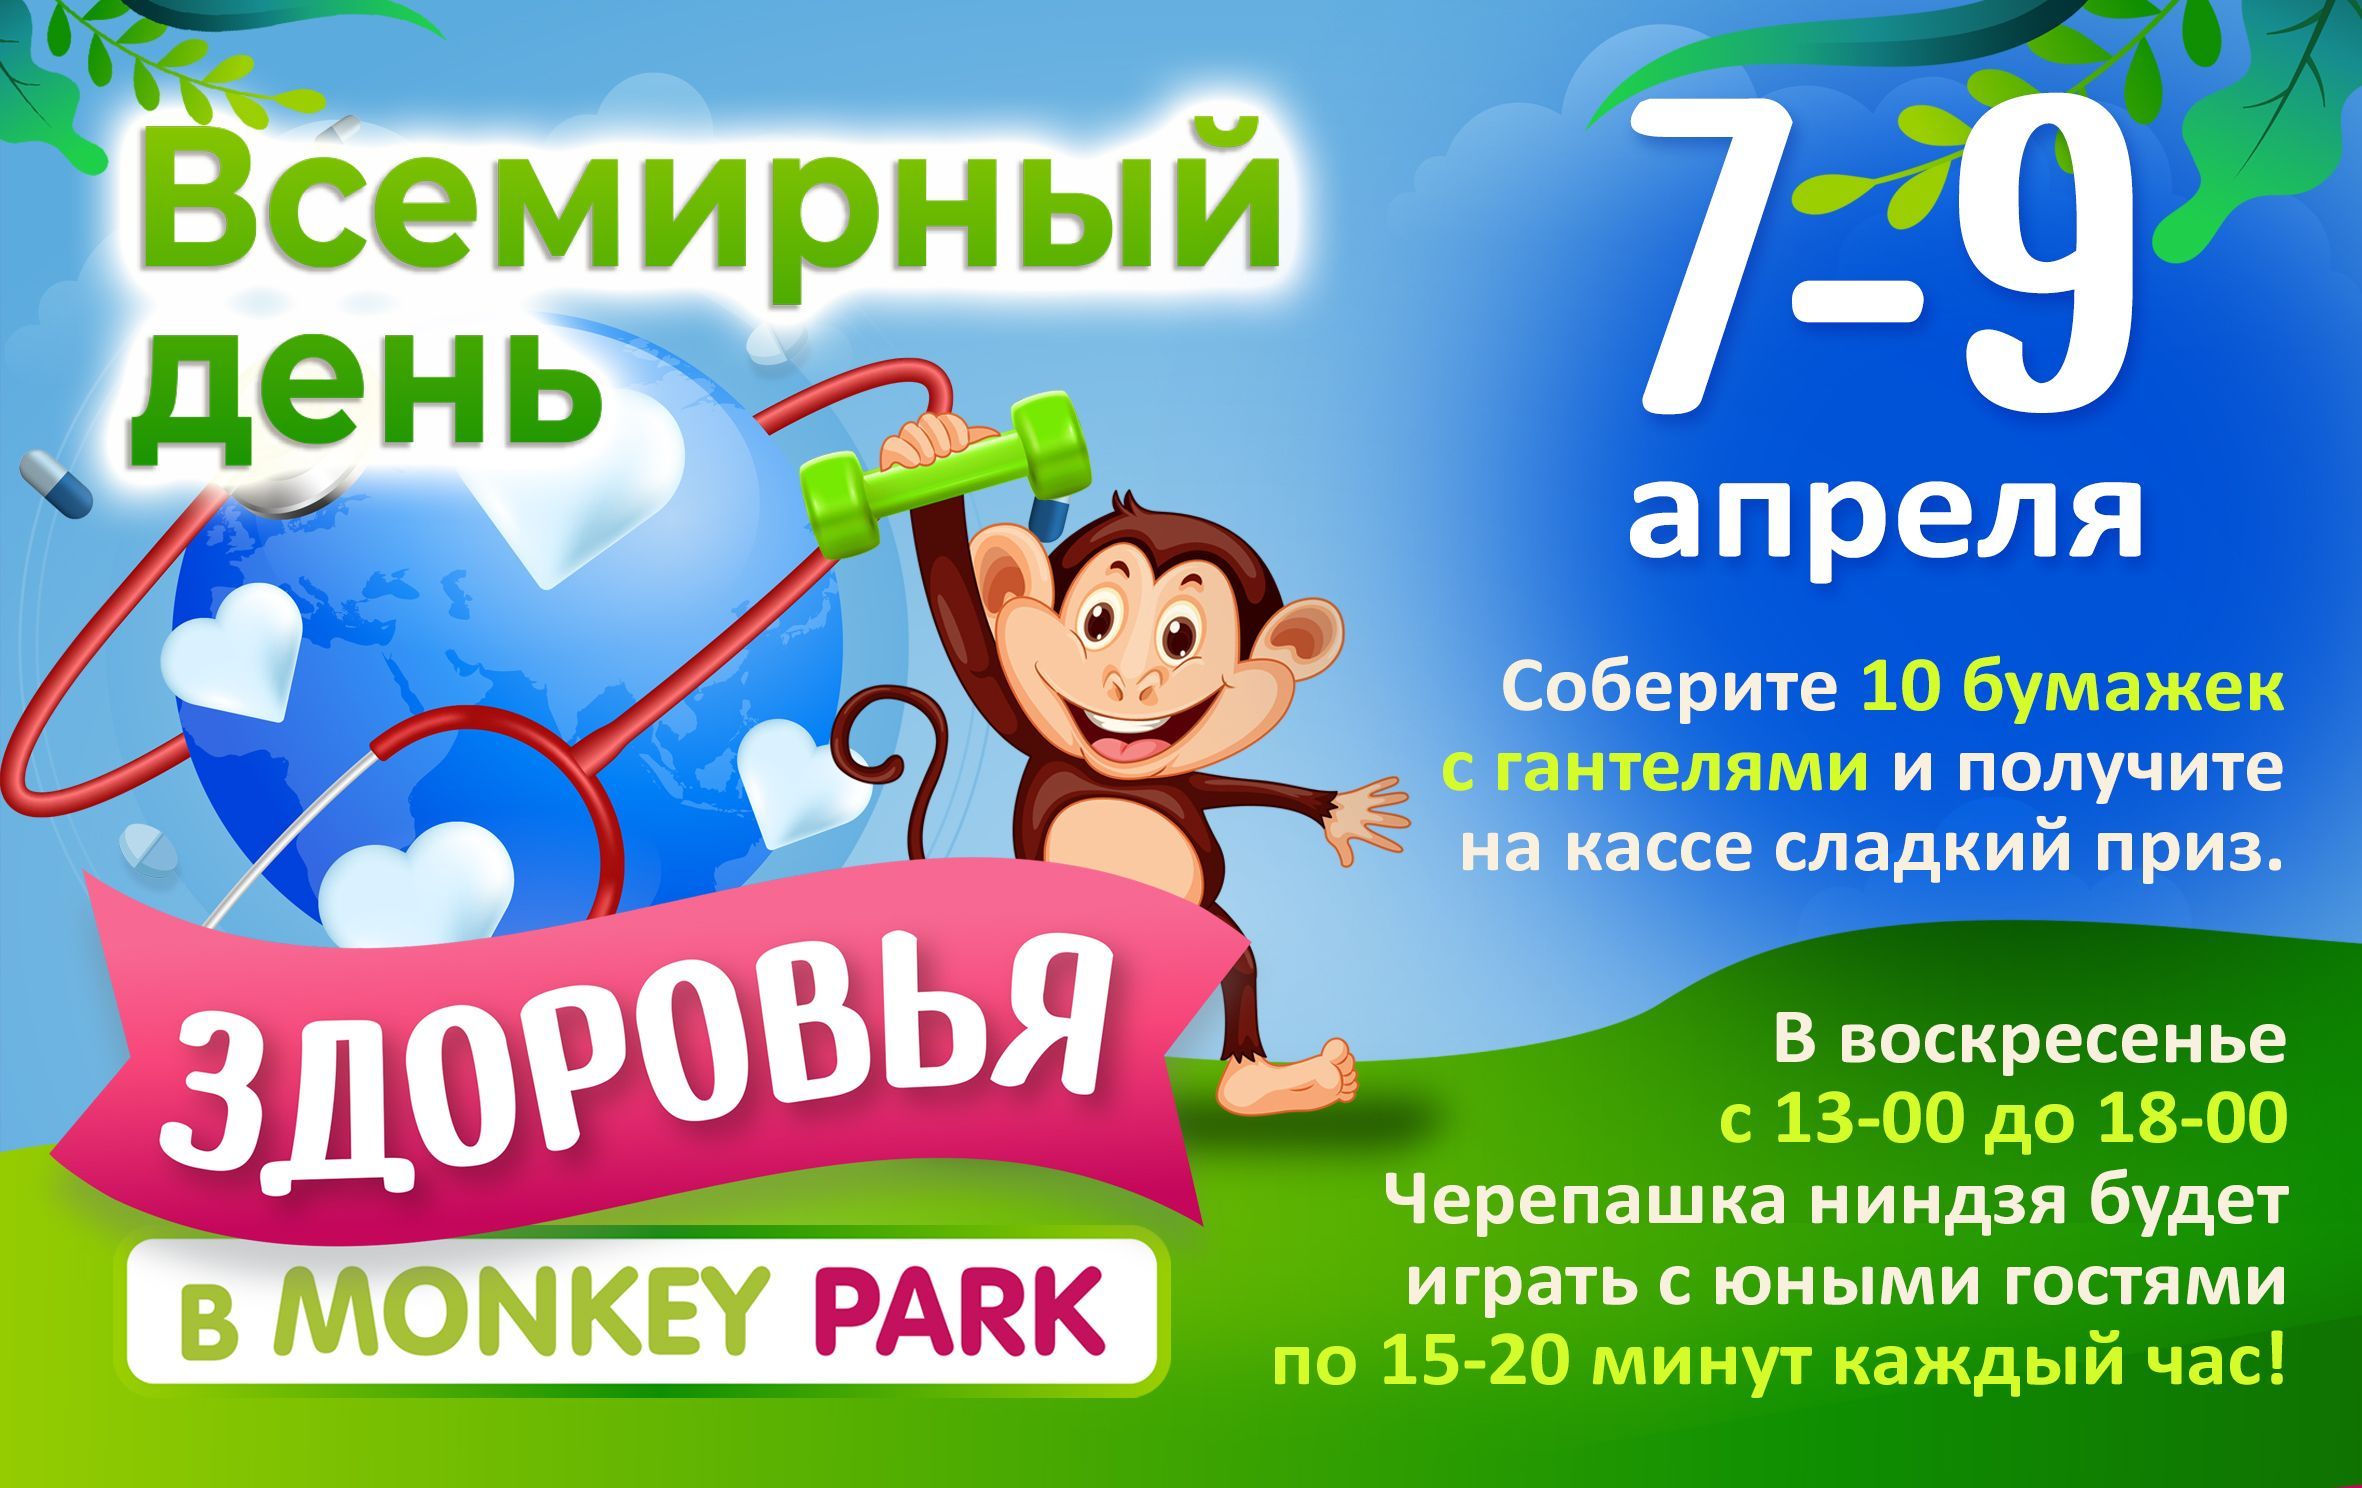 День здоровья в Monkey Park 7-9 апреля